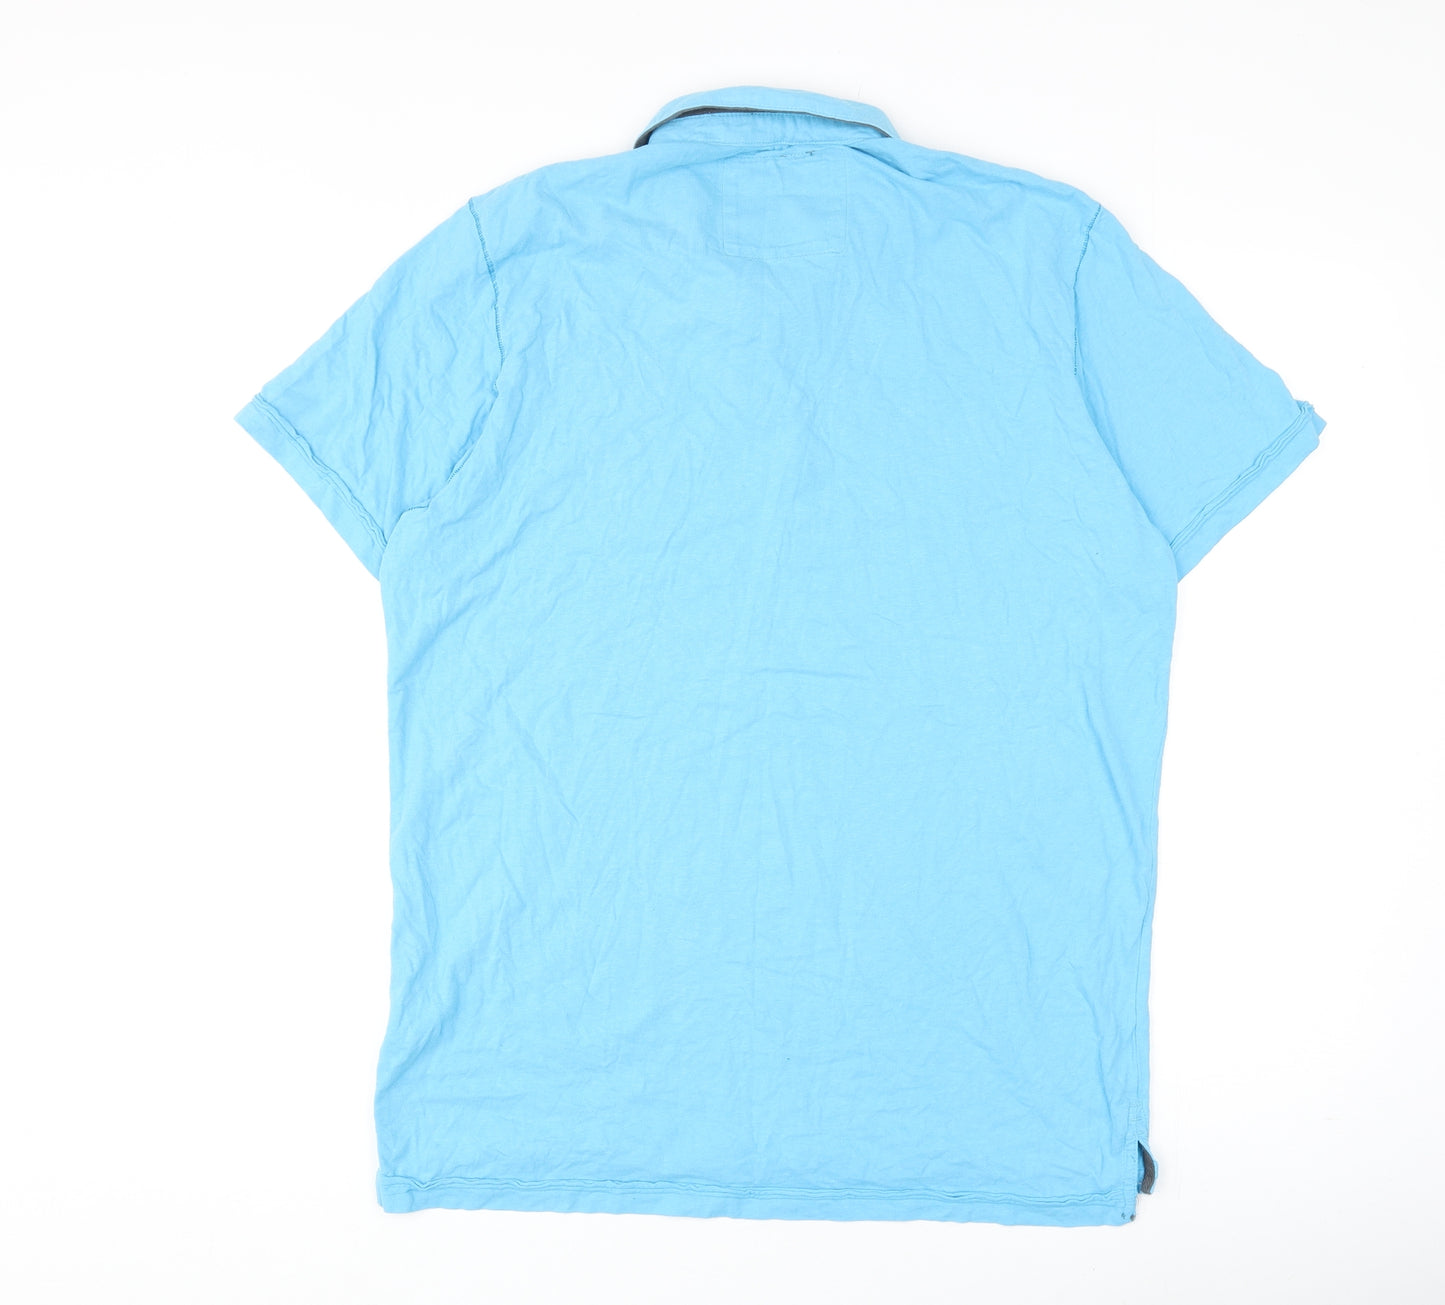 Aéropostale Mens Blue Cotton T-Shirt Size L Collared